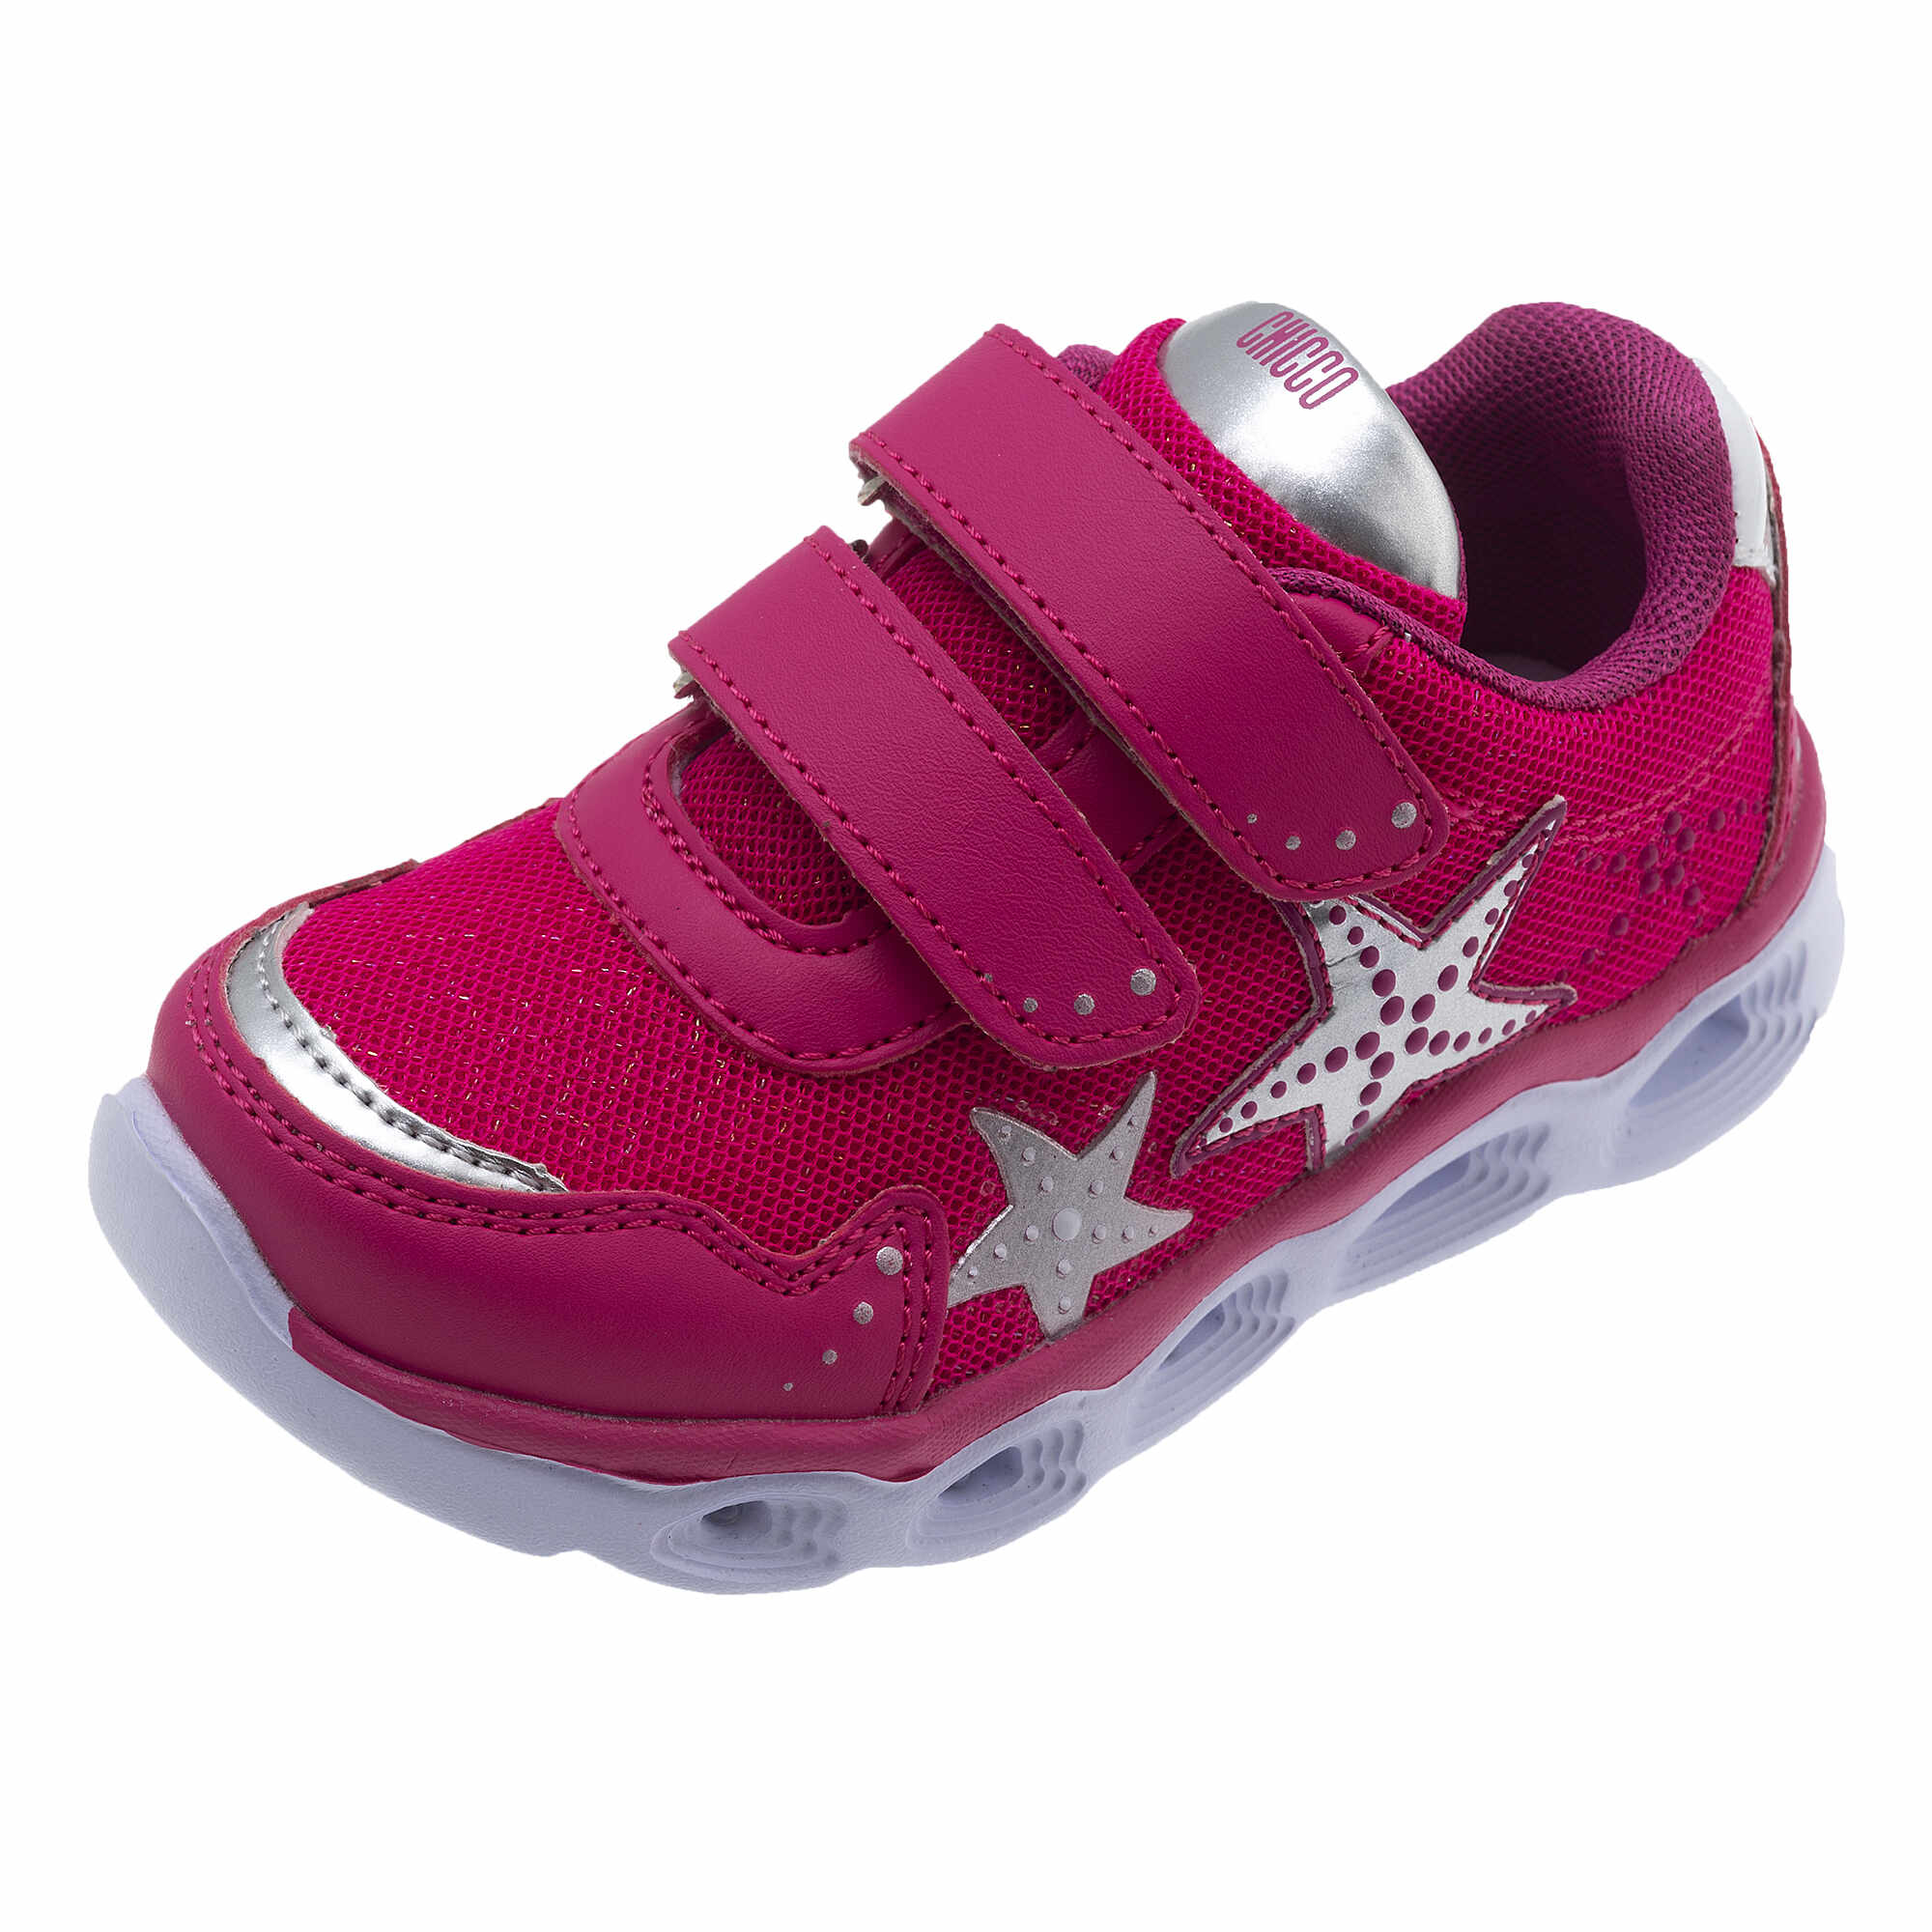 Adidasi copii Chicco Cometas, roz, 63641